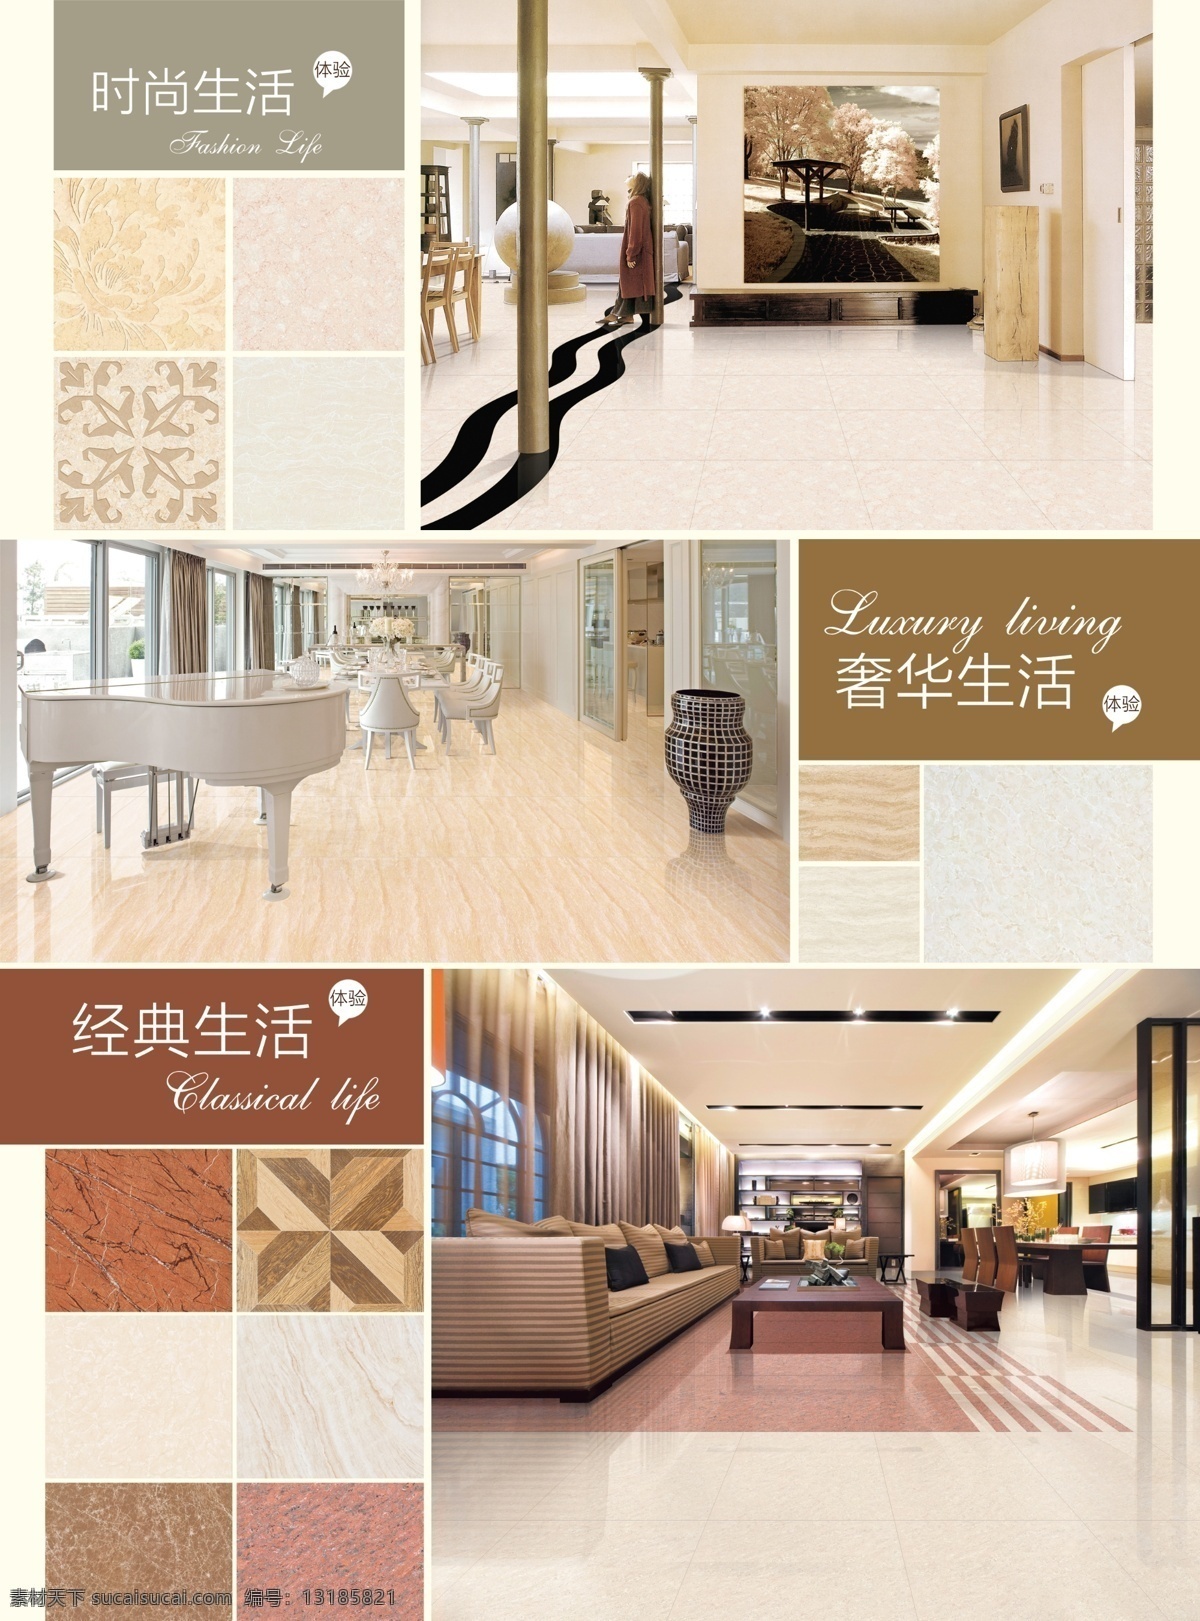 顺辉陶瓷 15活动 理石 瓷砖 时尚生活 奢华生活 经典生活 室内效果图 广告设计模板 源文件